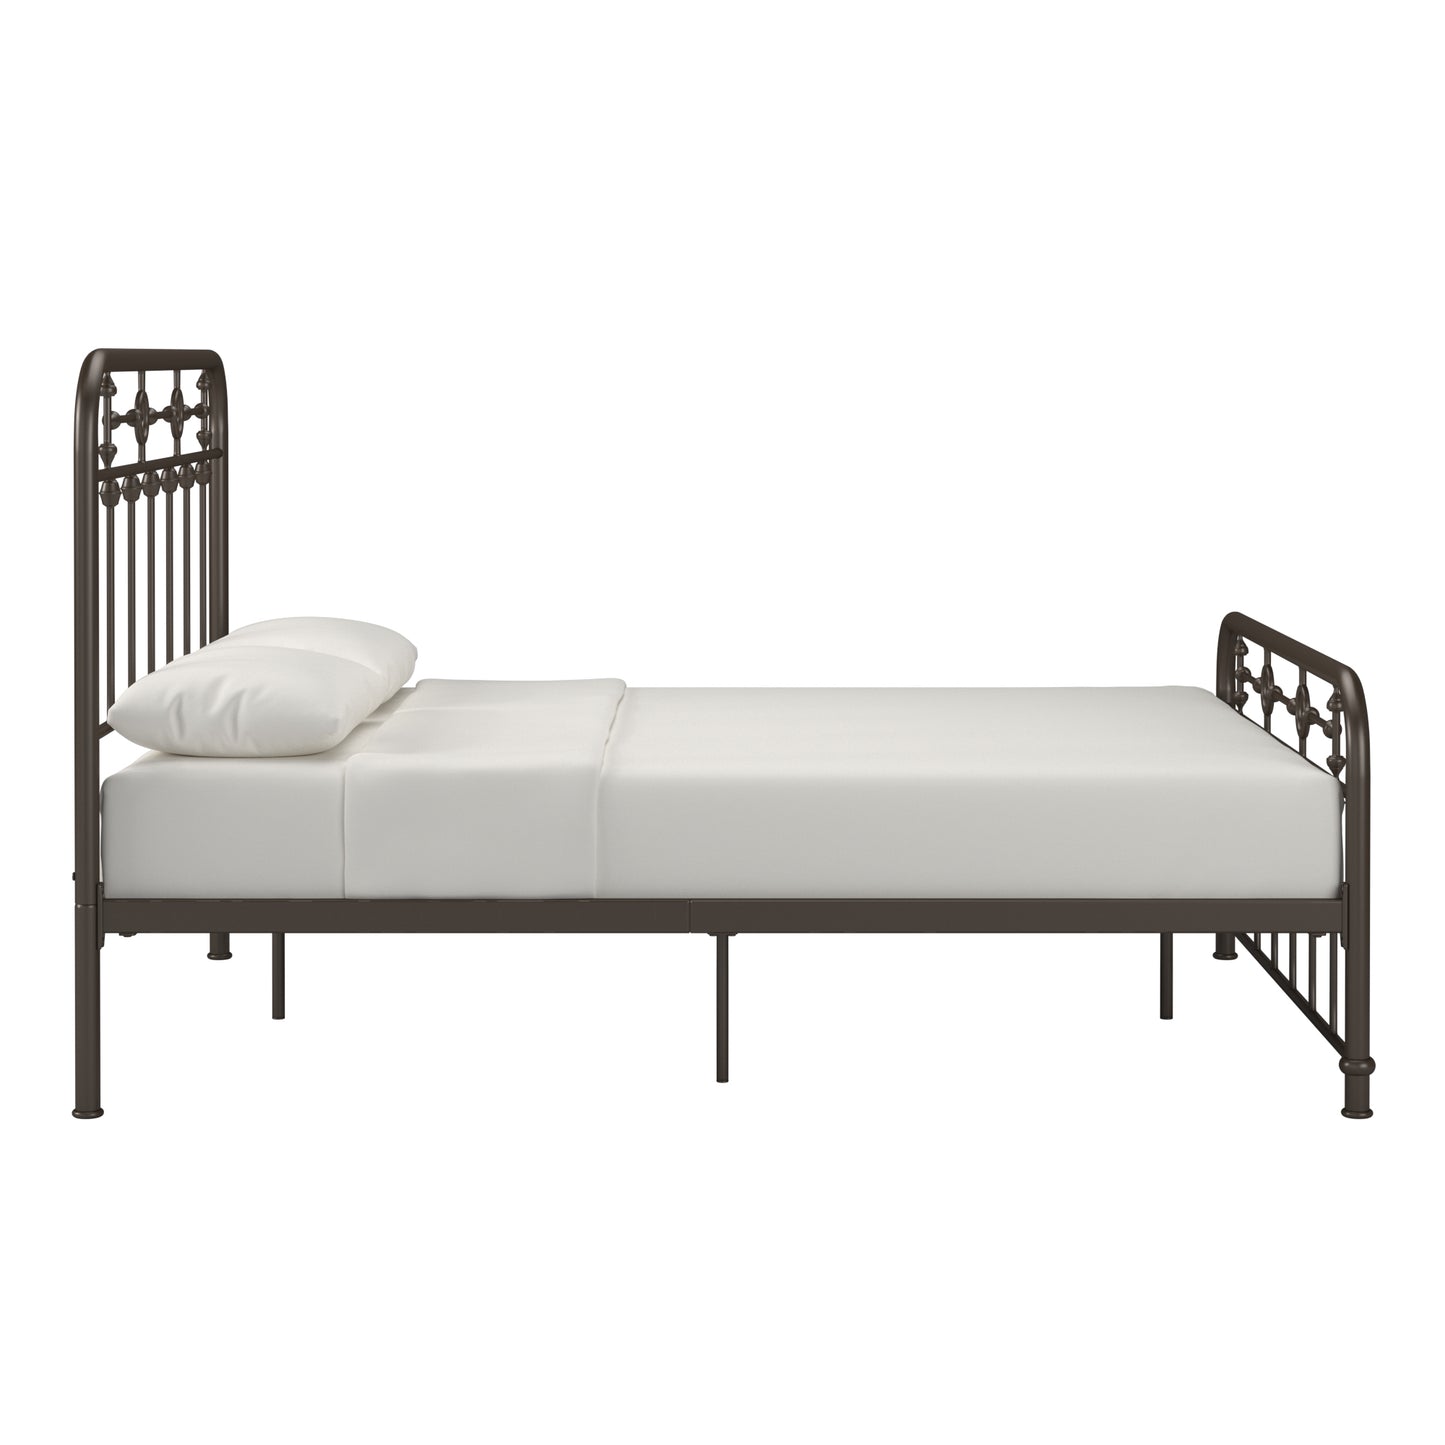 Metal Spindle Platform Bed - Dark Bronze, Full Size (Full Size)